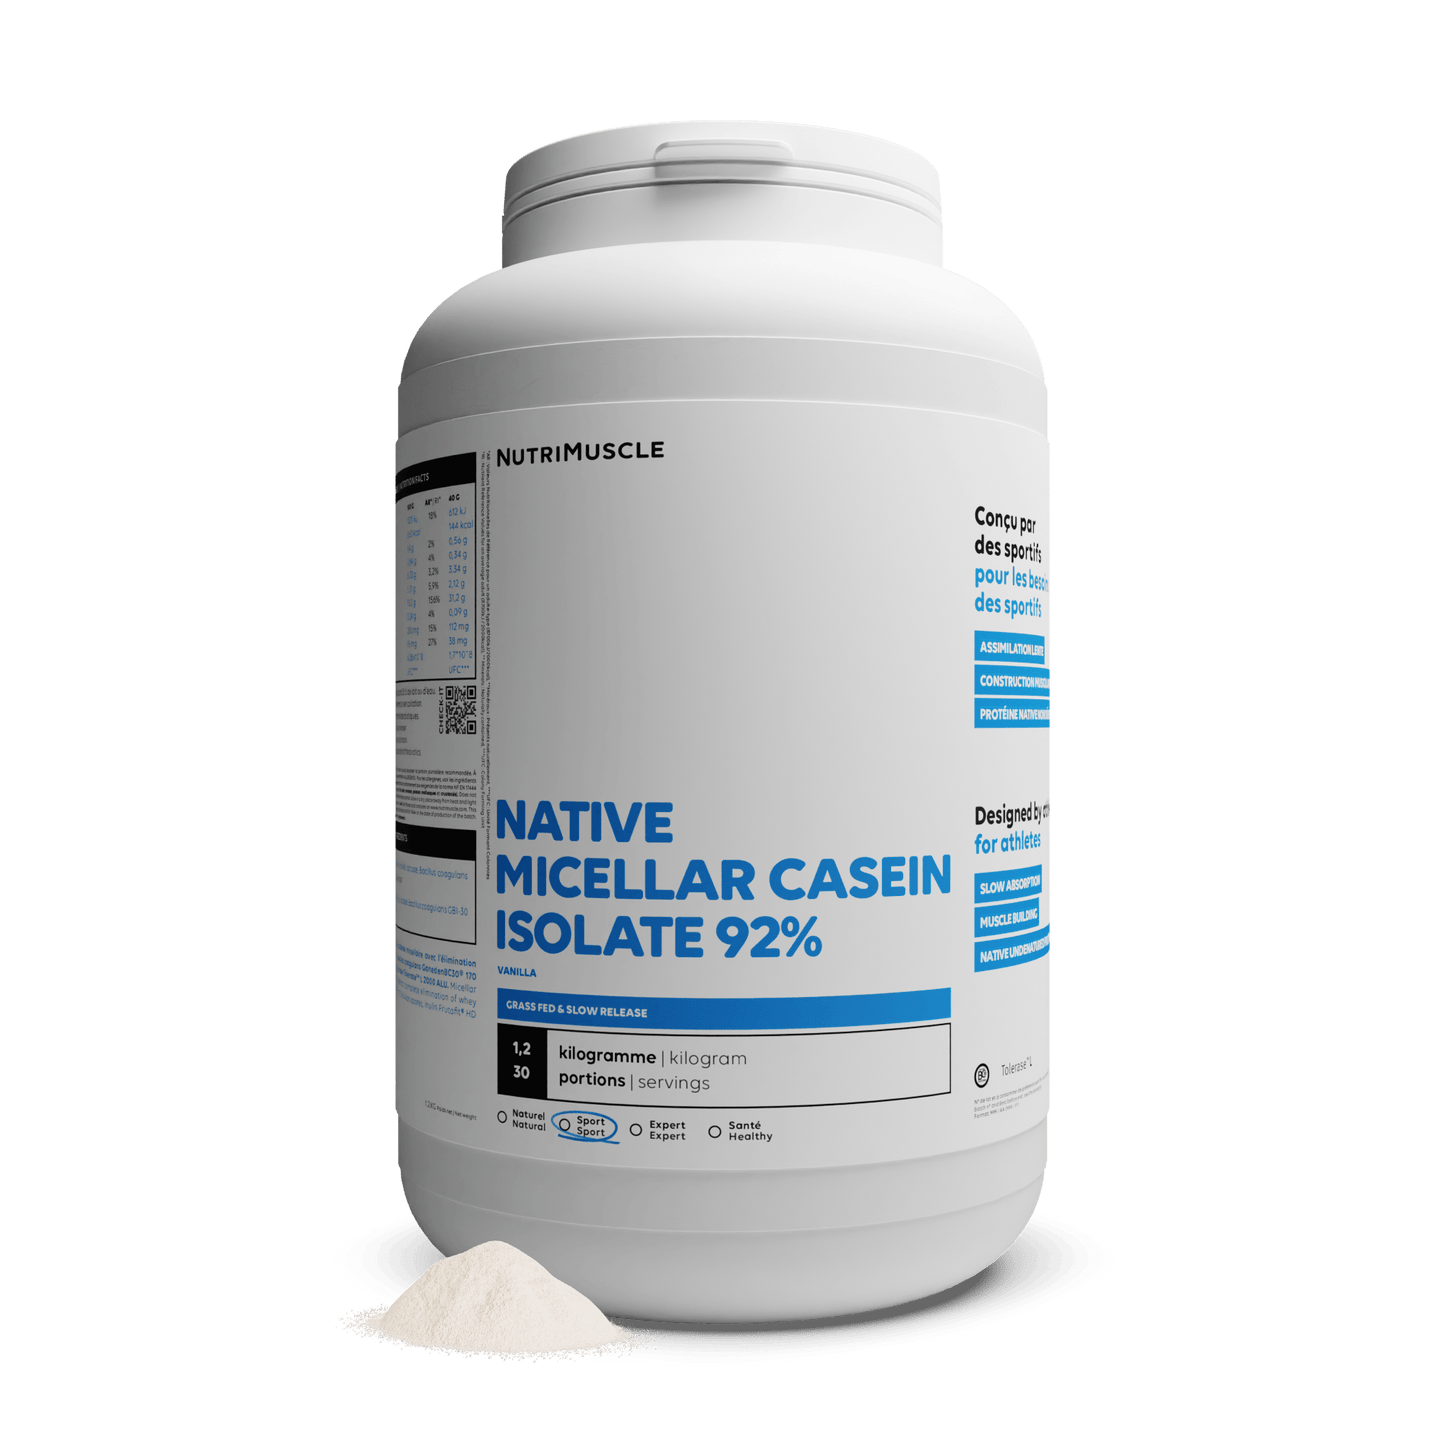 Nutrimuscle Protéines Vanille / 1.20 kg Isolat de caséine micellaire 92%